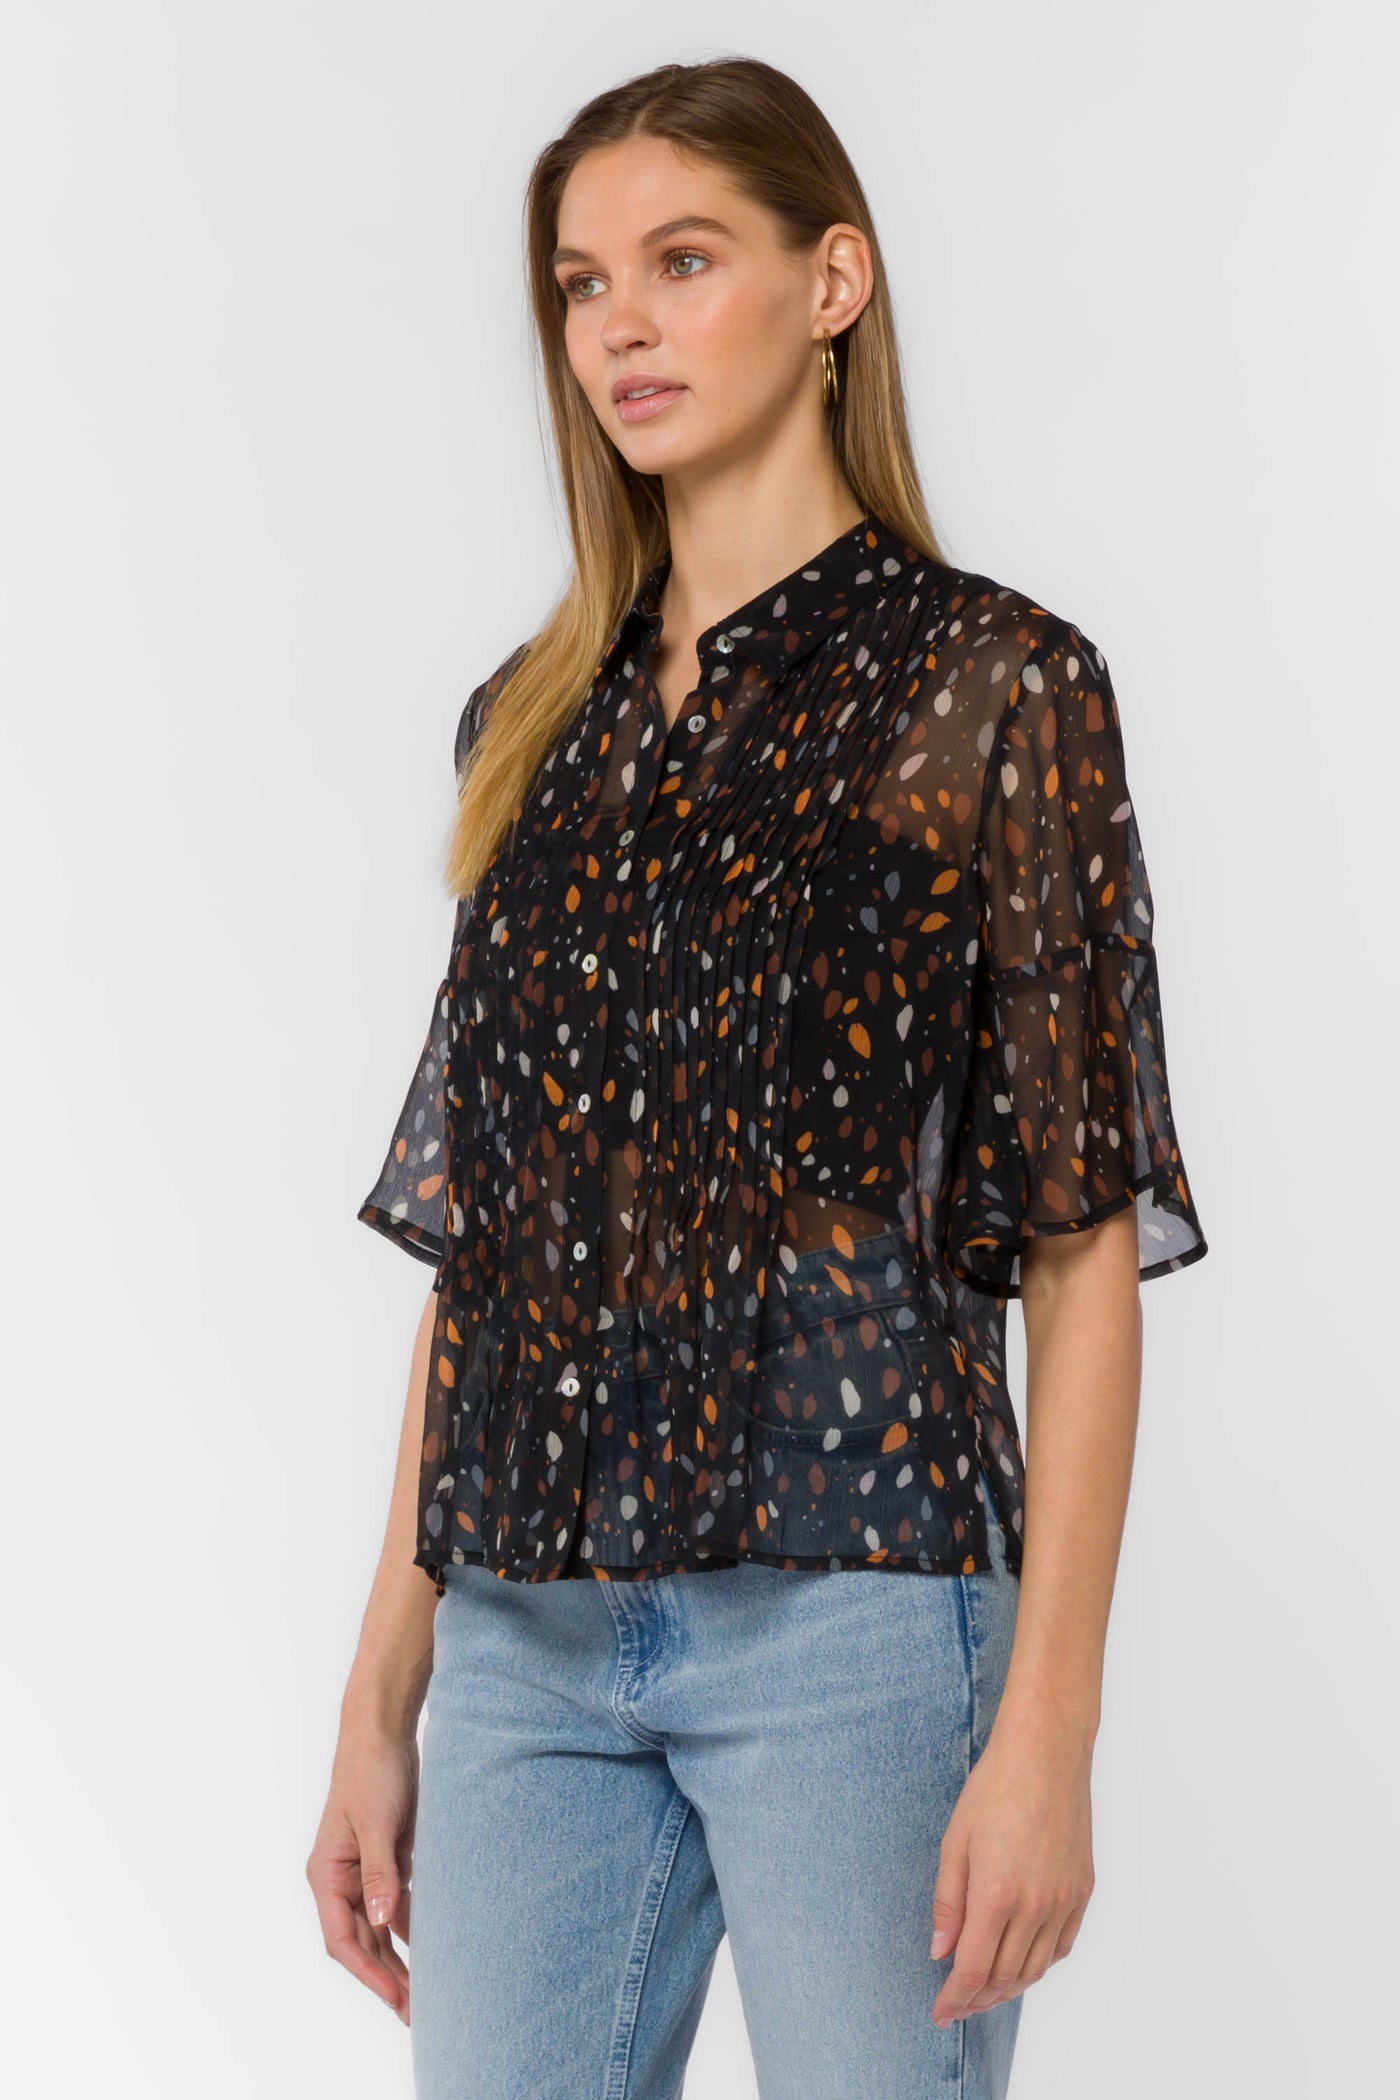 Jace Black Dots Shirt - Tops - Velvet Heart Clothing